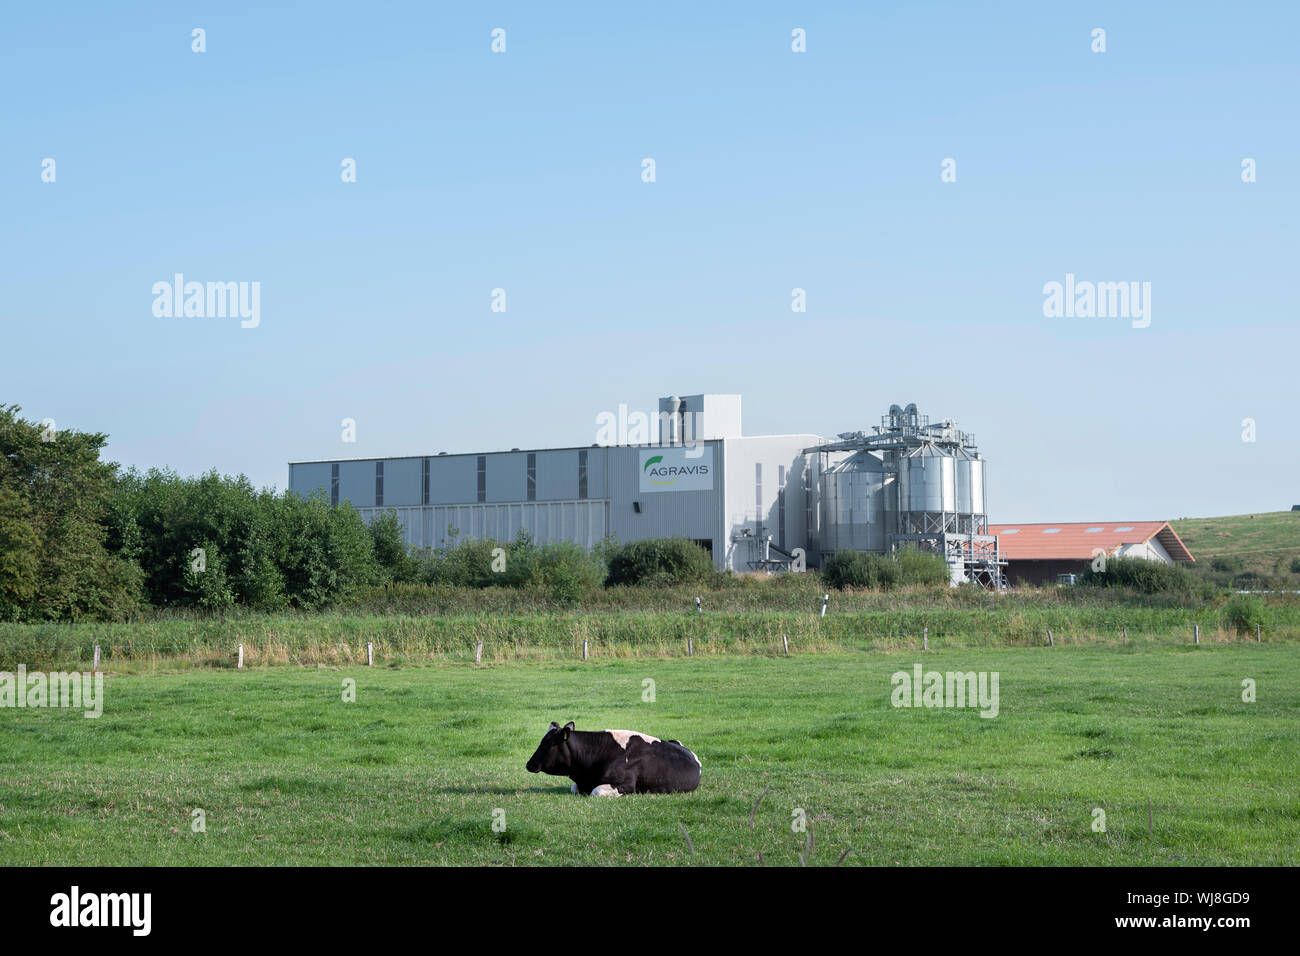 Vaca solitaria en el prado cerca de fábrica de agravis ostfriesland entre norden y aurich Foto de stock